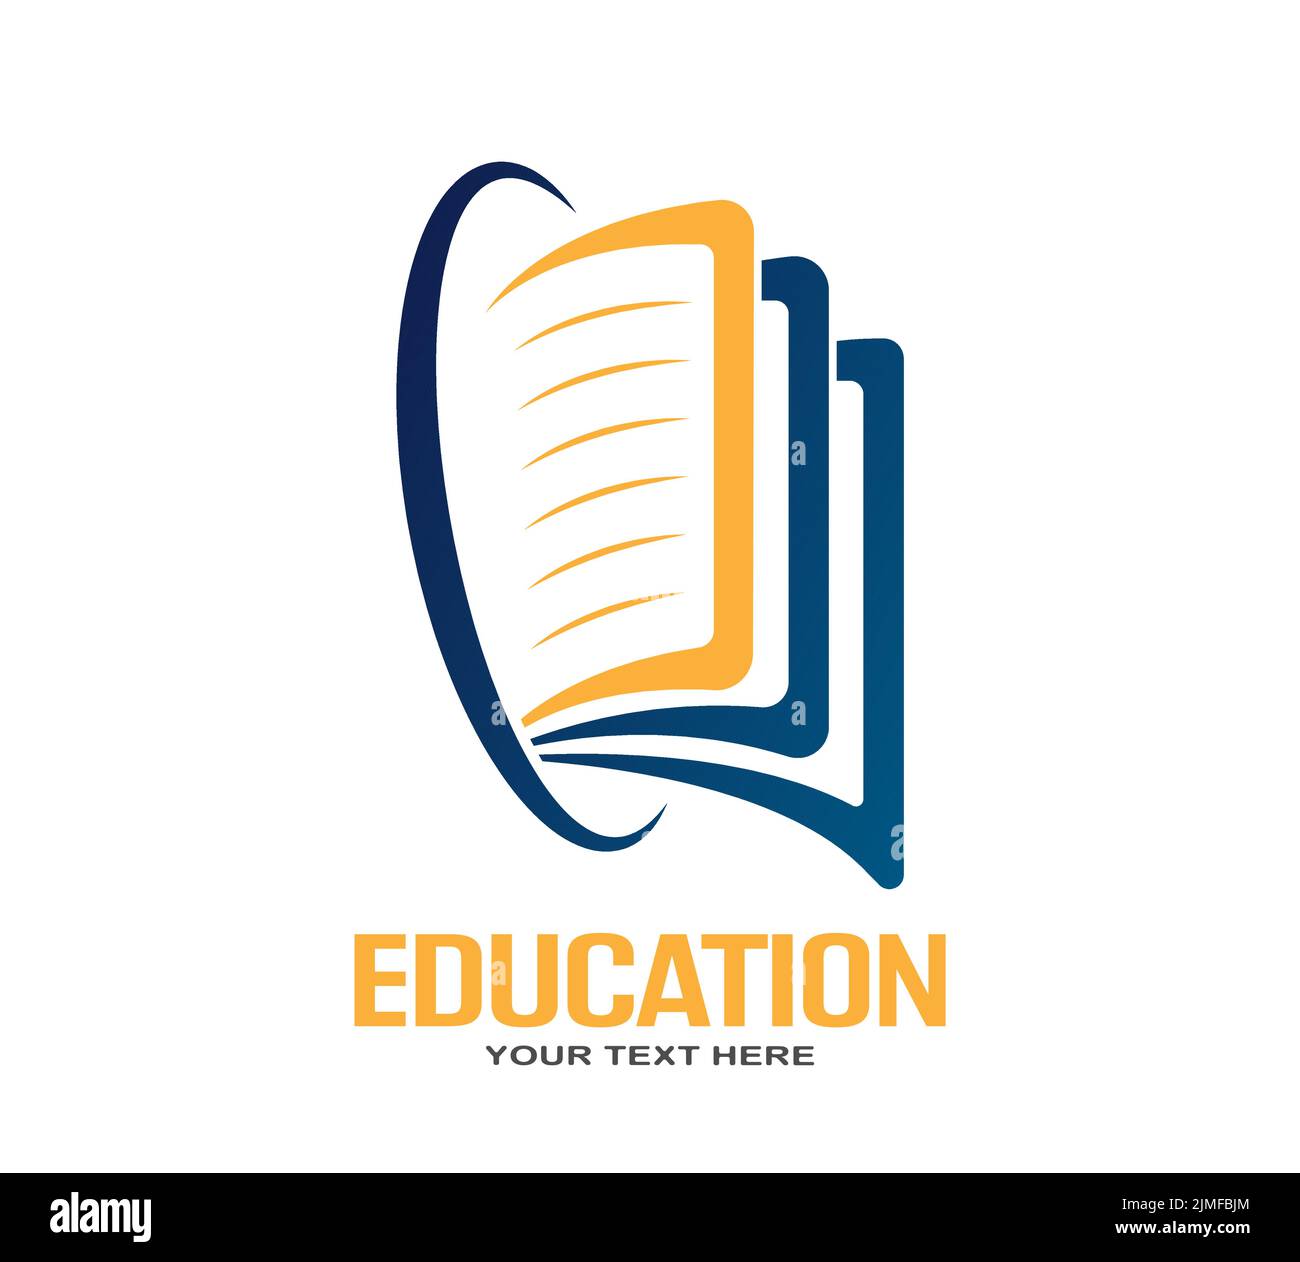 Logo für den Bildungsbereich. Ein offenes Buch. Vektorgrafik für Websites, Anwendungen und thematisches Design. Flacher Style Stock Vektor